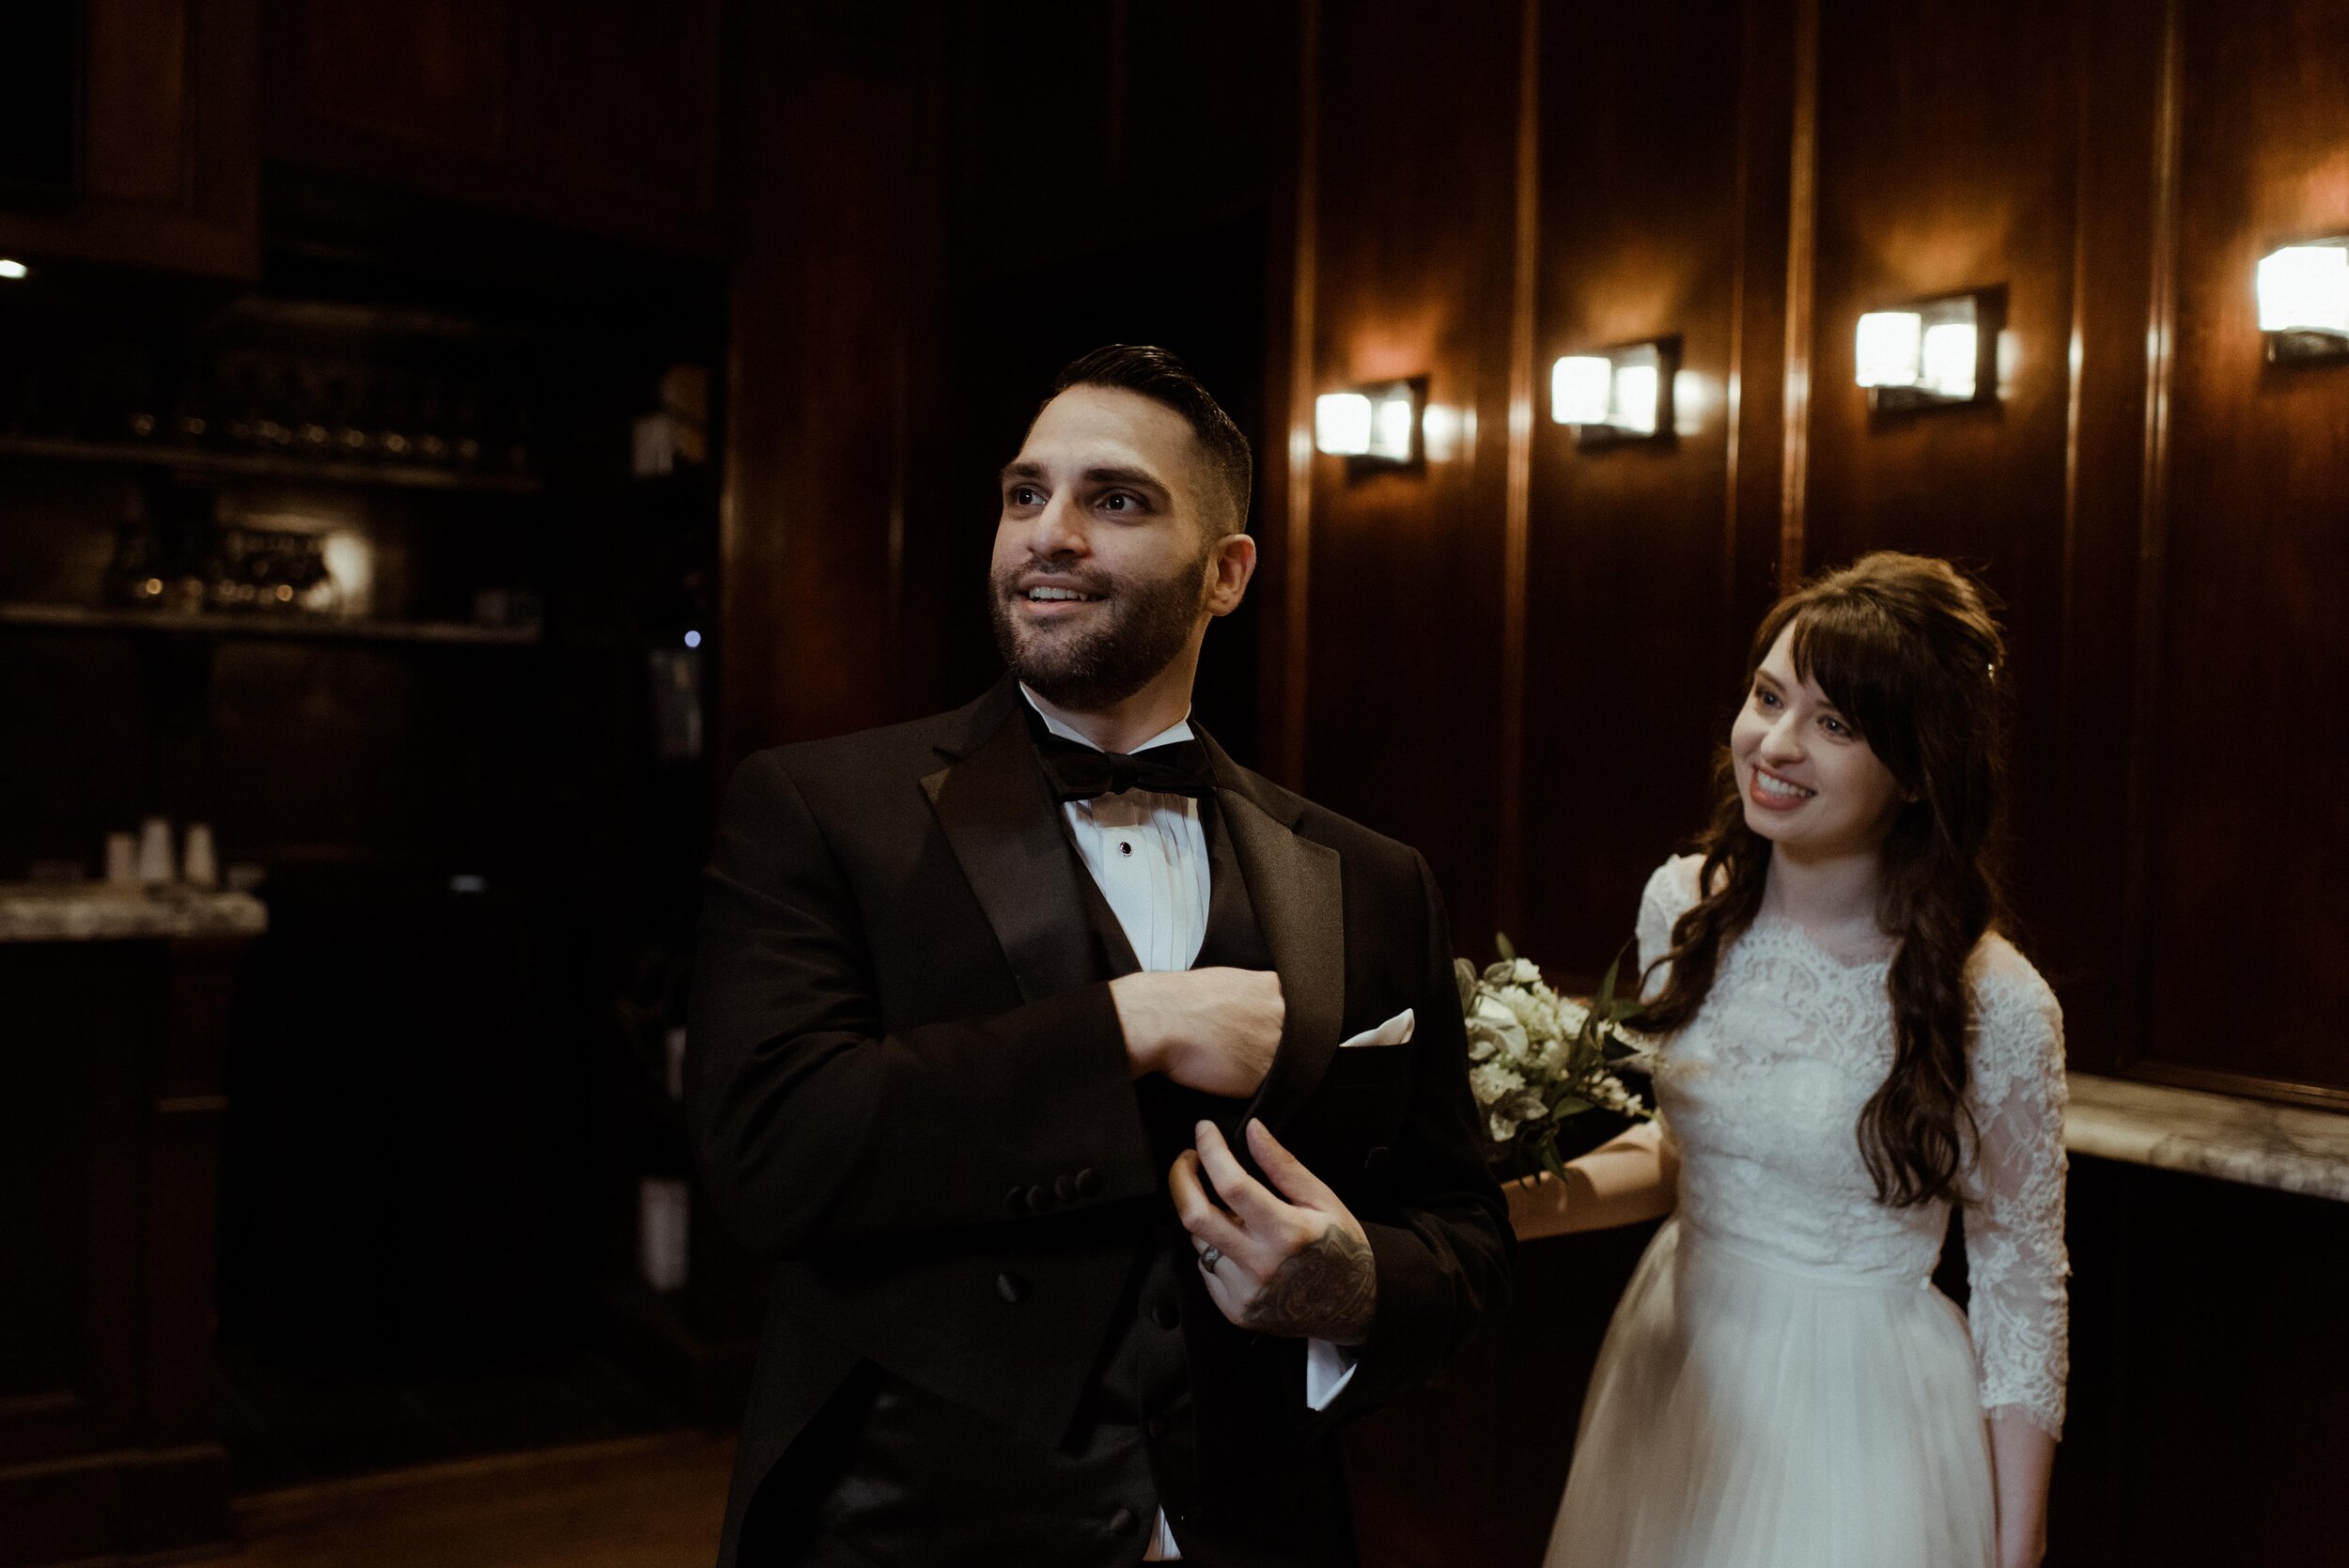 bride-groom-smile-at-guests-10-downing.jpg